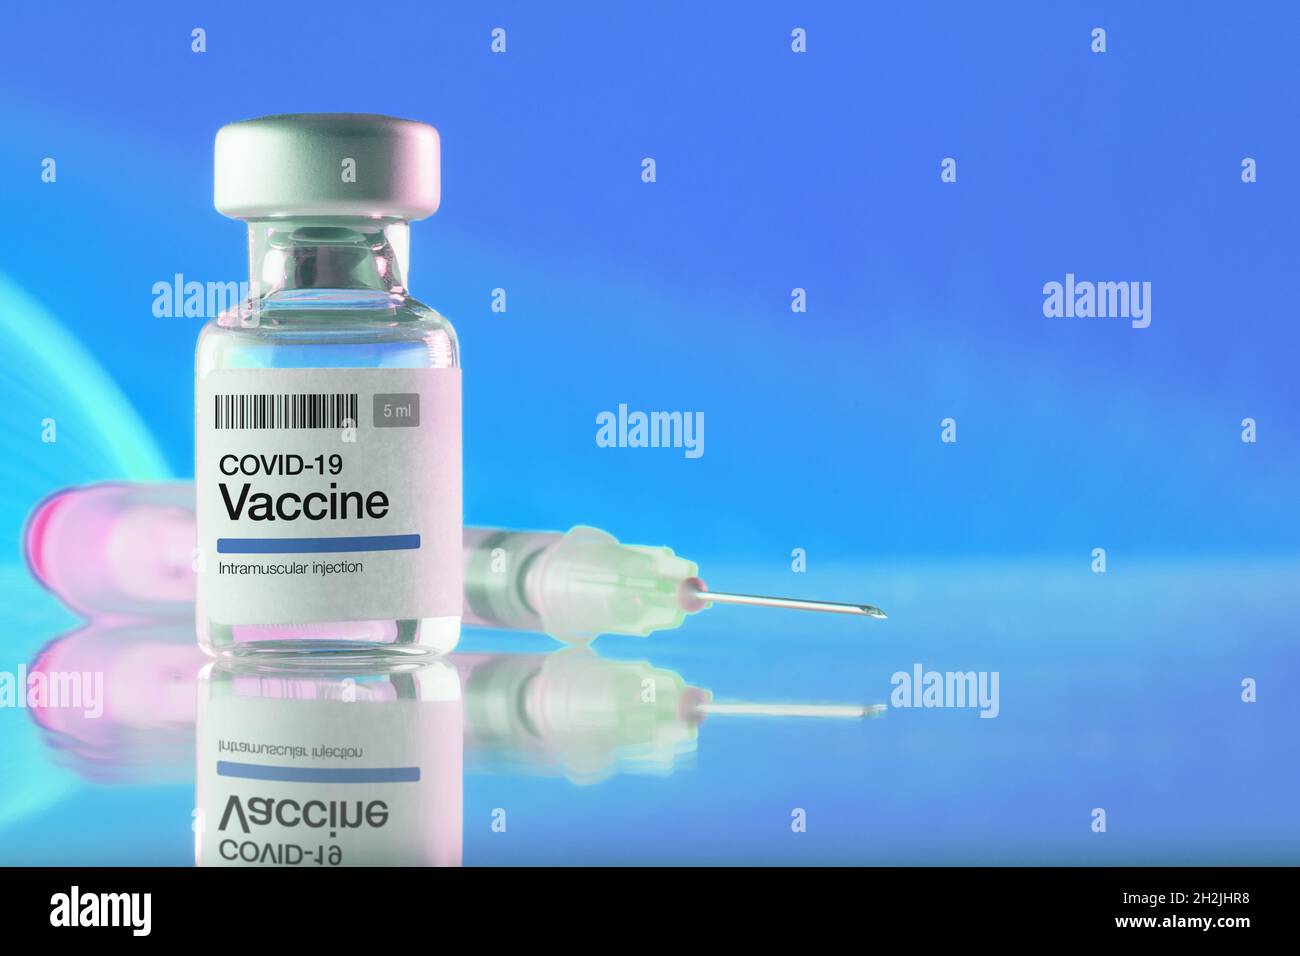 Primo piano di un flaconcino con vaccino e siringa COVID-19 su sfondo blu. Vaccinazioni, Covid-19, industria farmaceutica e concetti di salute Foto Stock